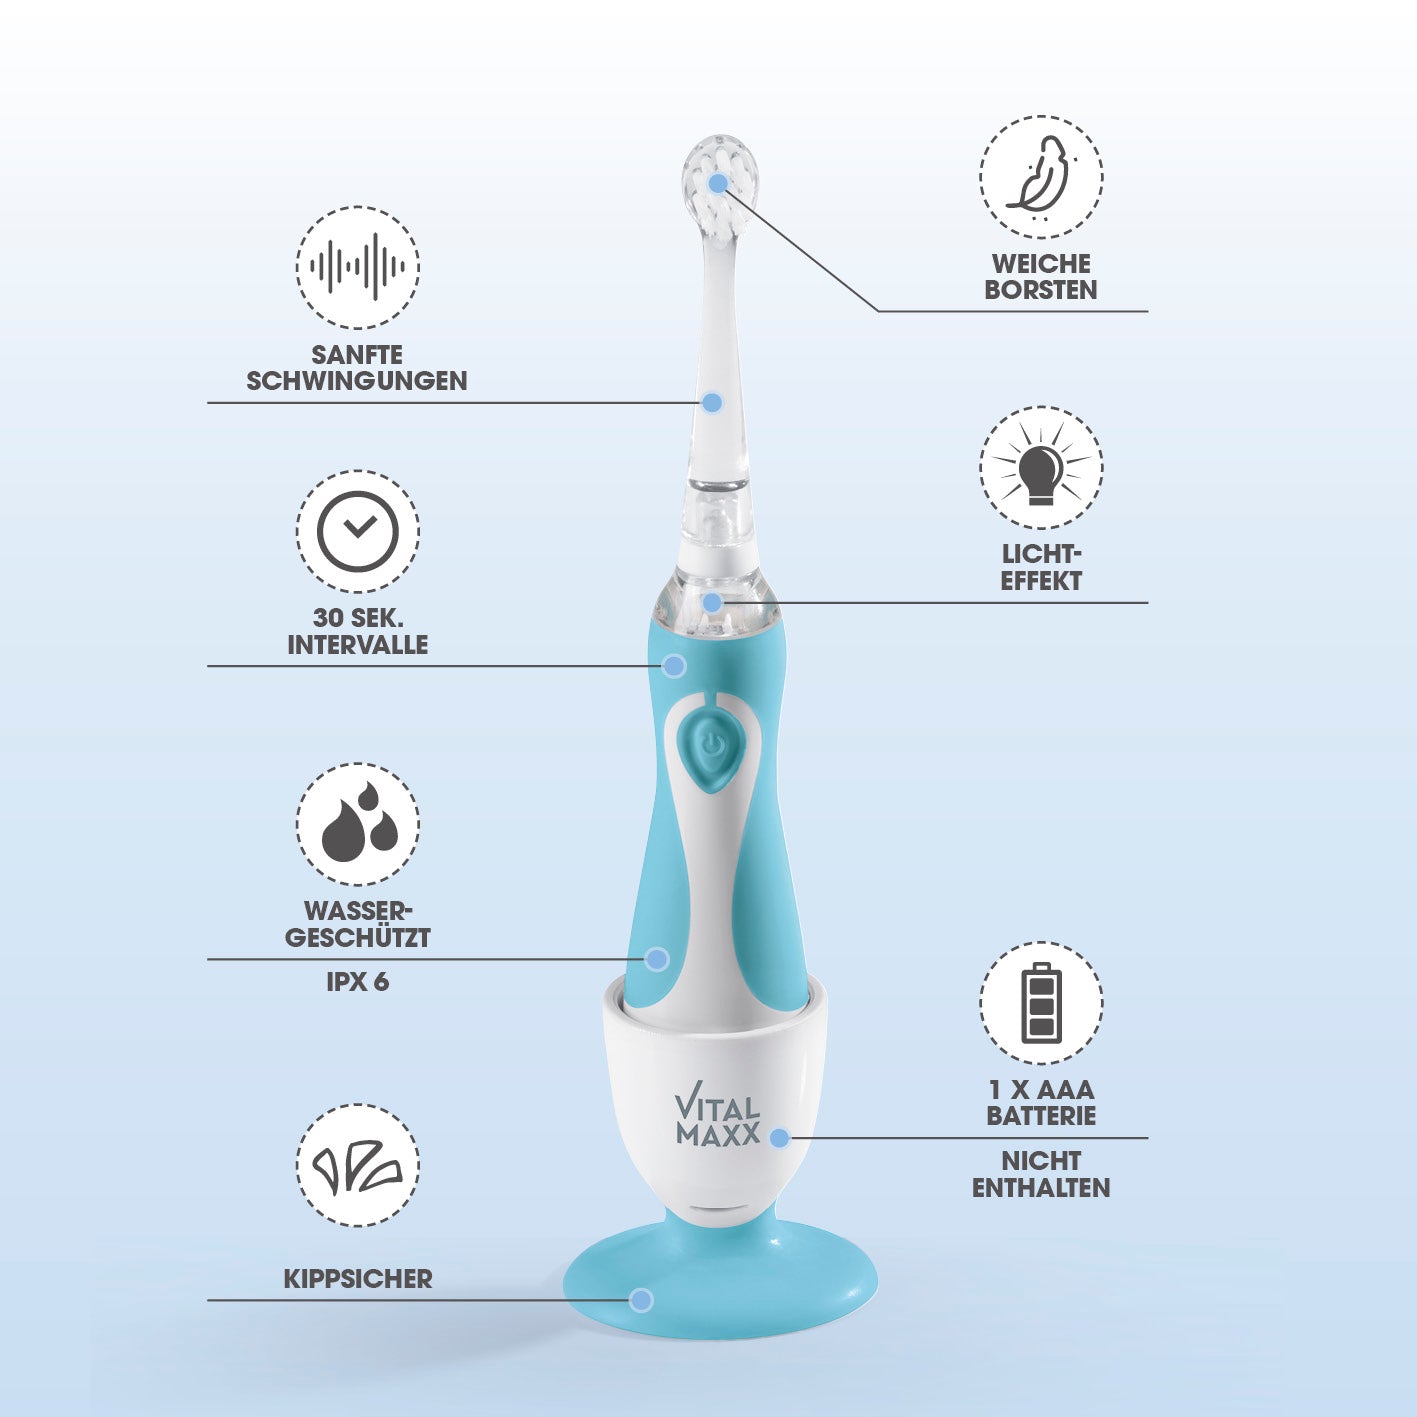 Elektrische Kinder-Zahnbürste mit Smart Timer - Ab 6 Monate* - Blau/Weiß